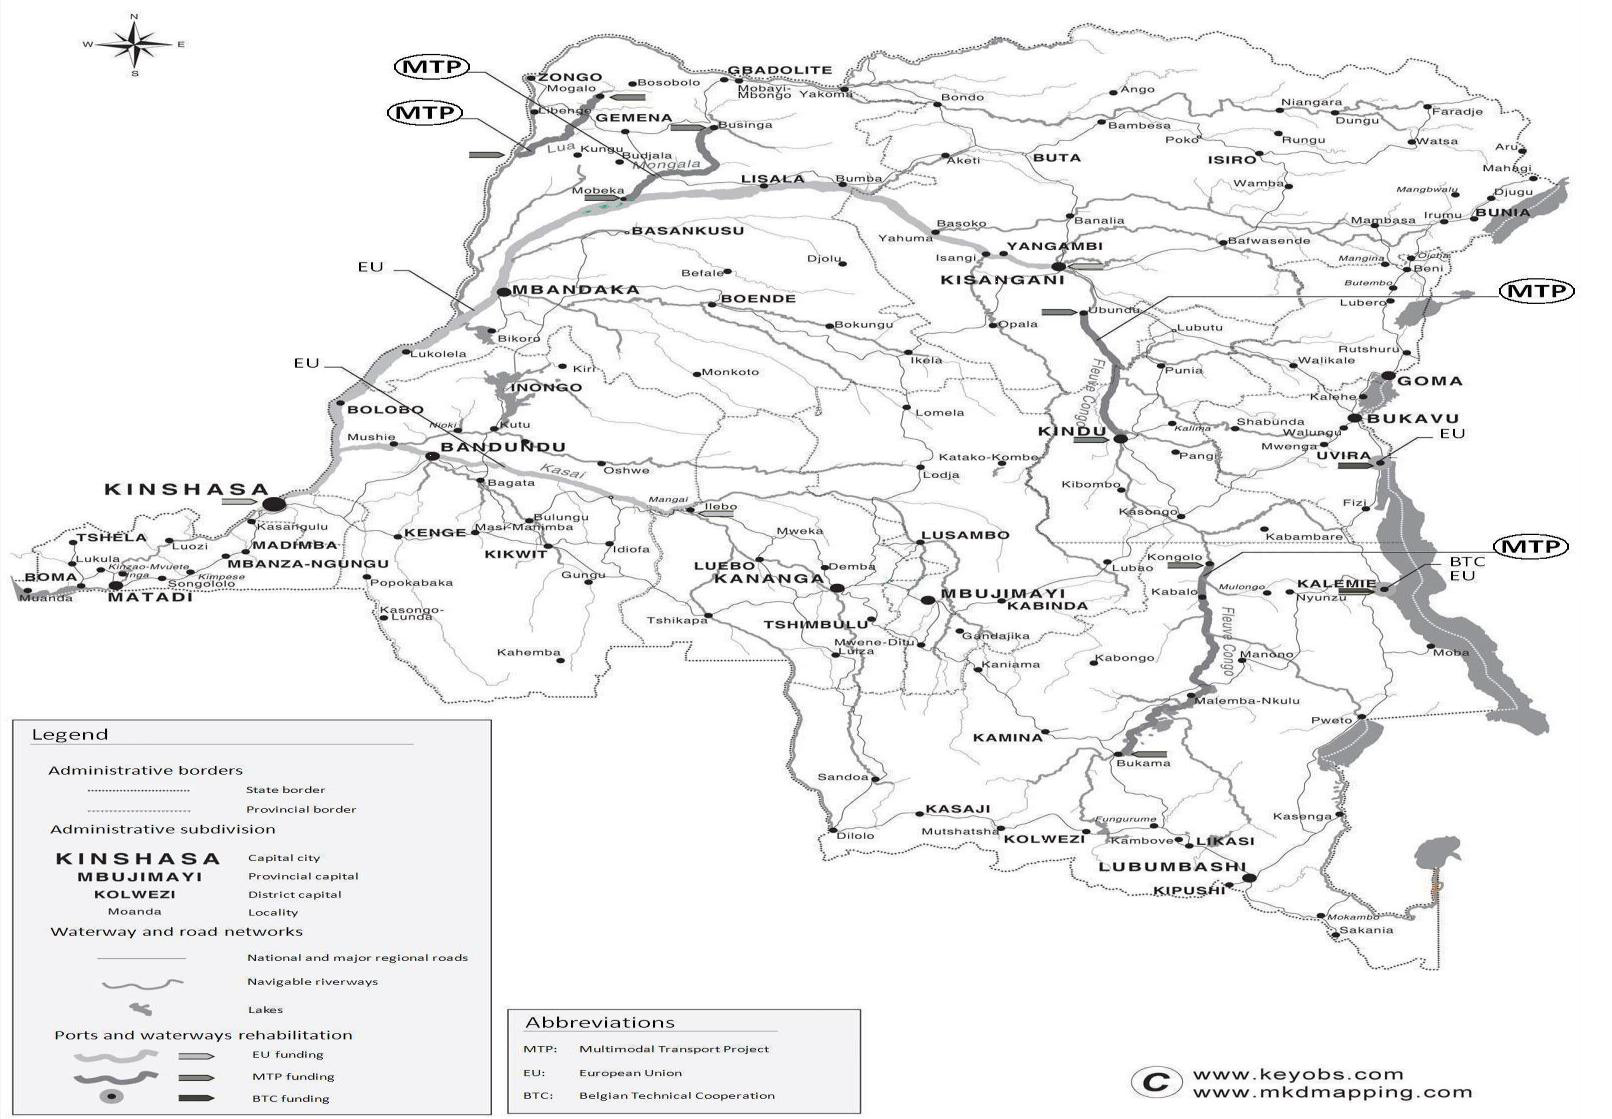 Democratic Republic of Congo Logistics Infrastructure